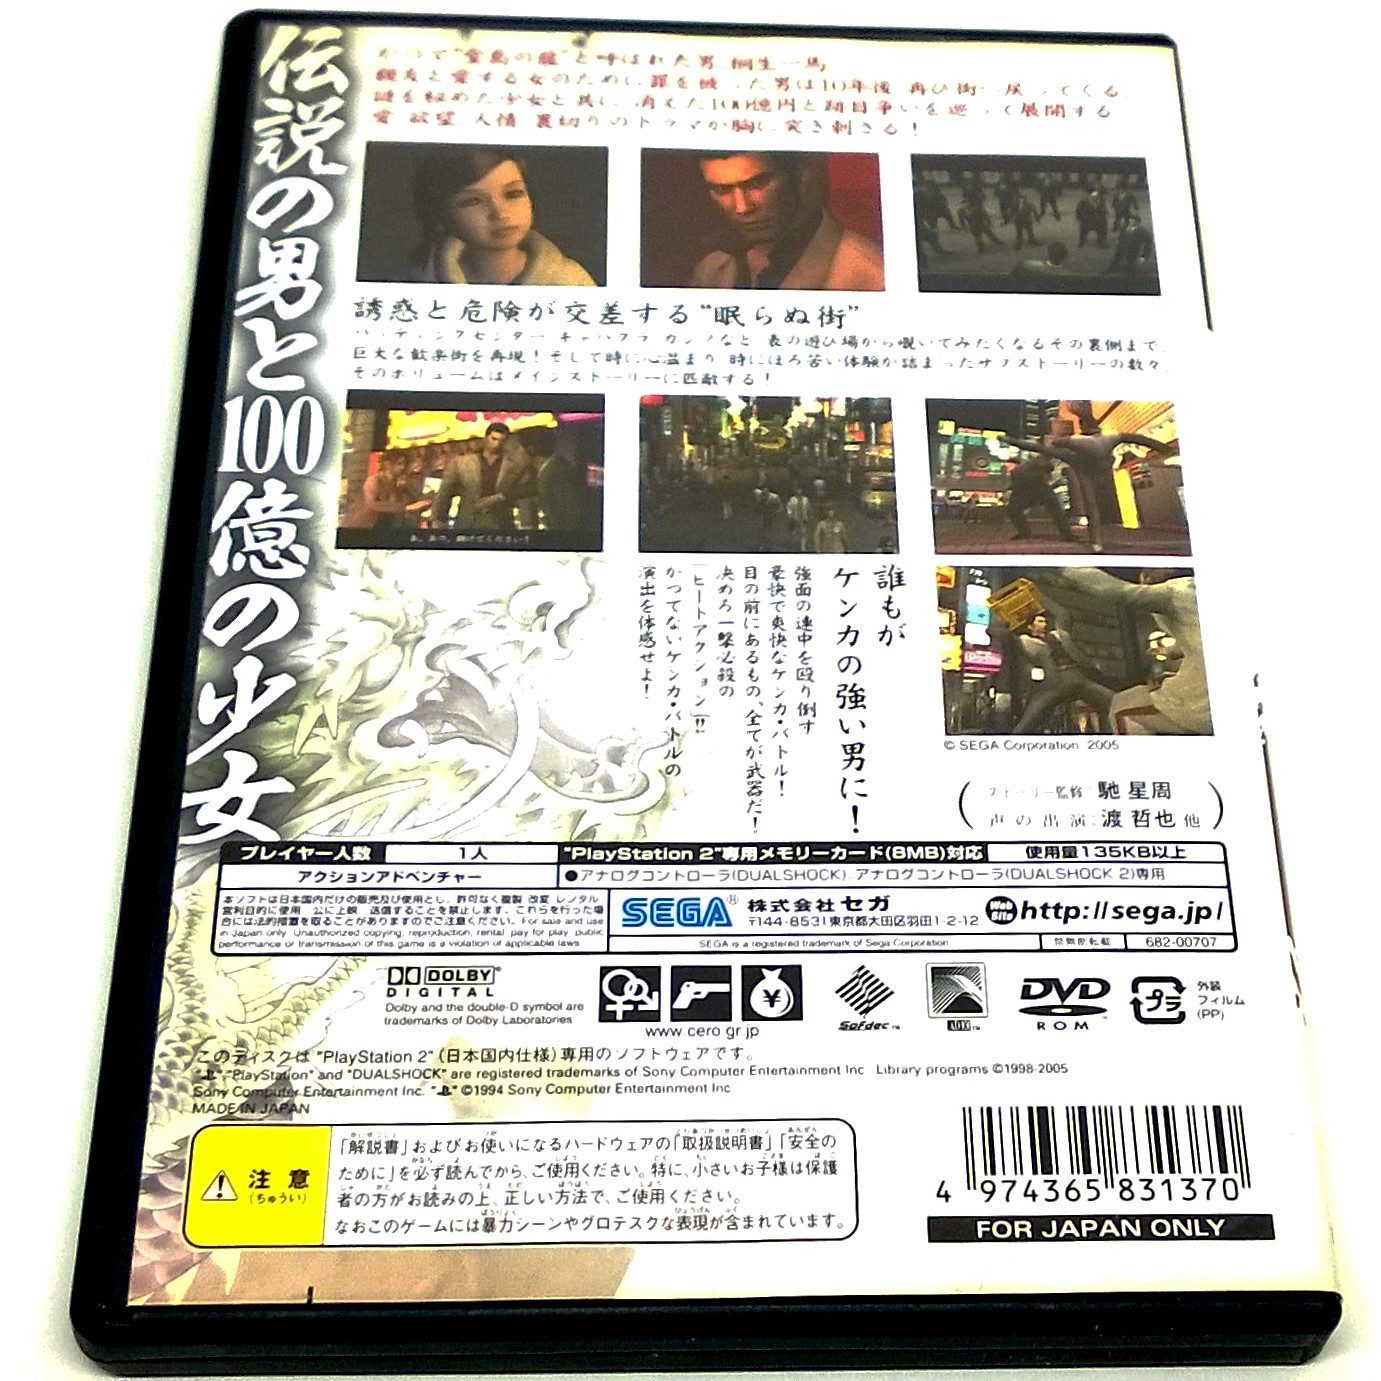 Ryuu ga Gotoku for PlayStation 2 (Import) - Back of case